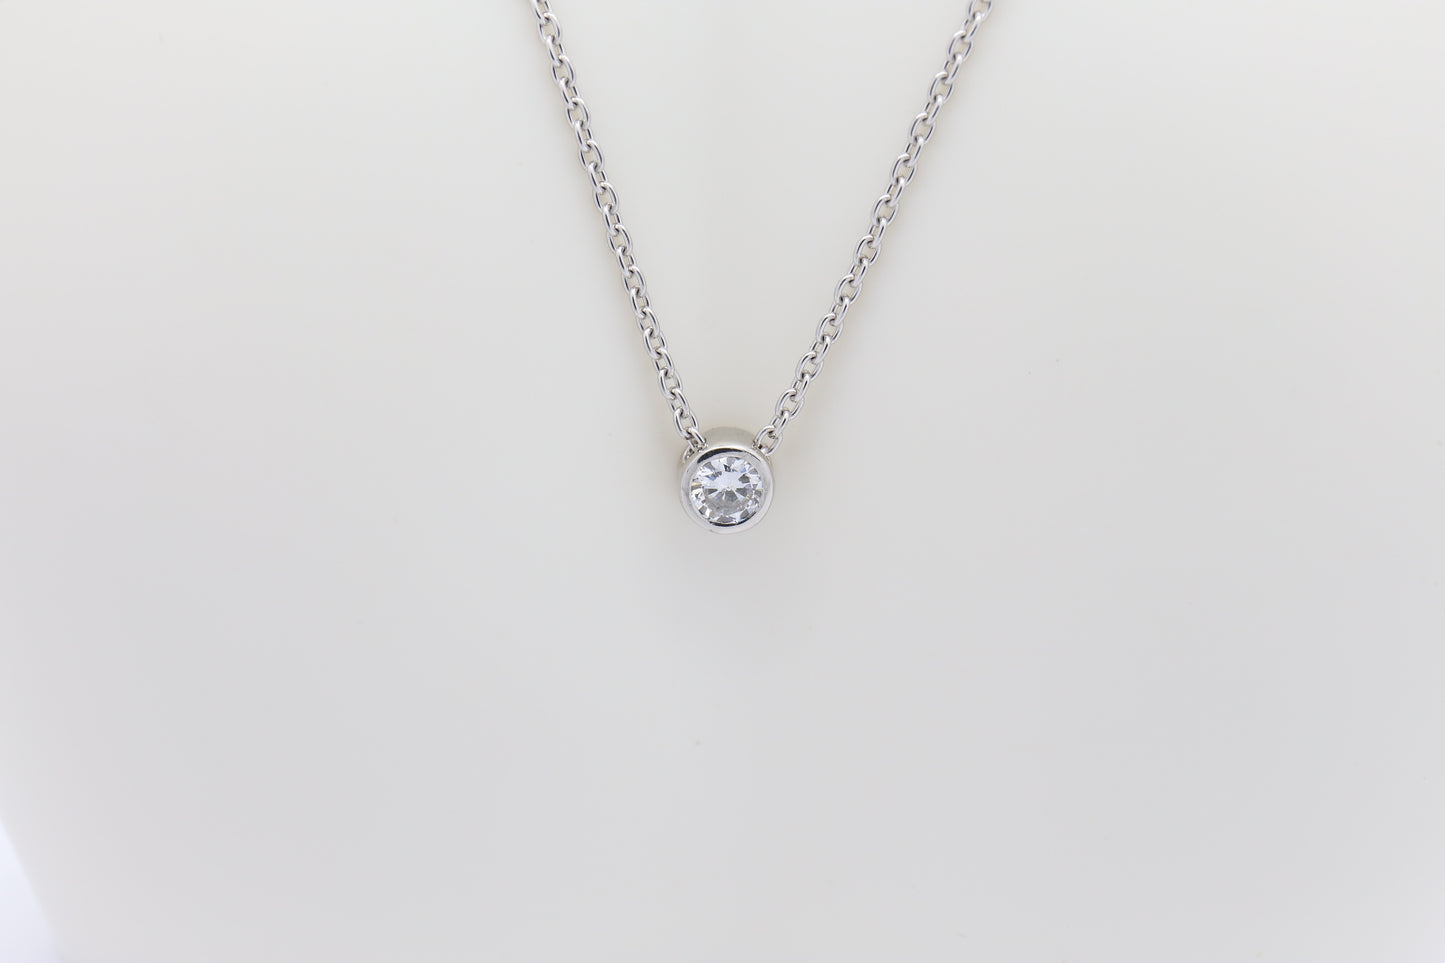 Platinum Solitare Diamond Pendant Necklace, 19 inches - 6.9g